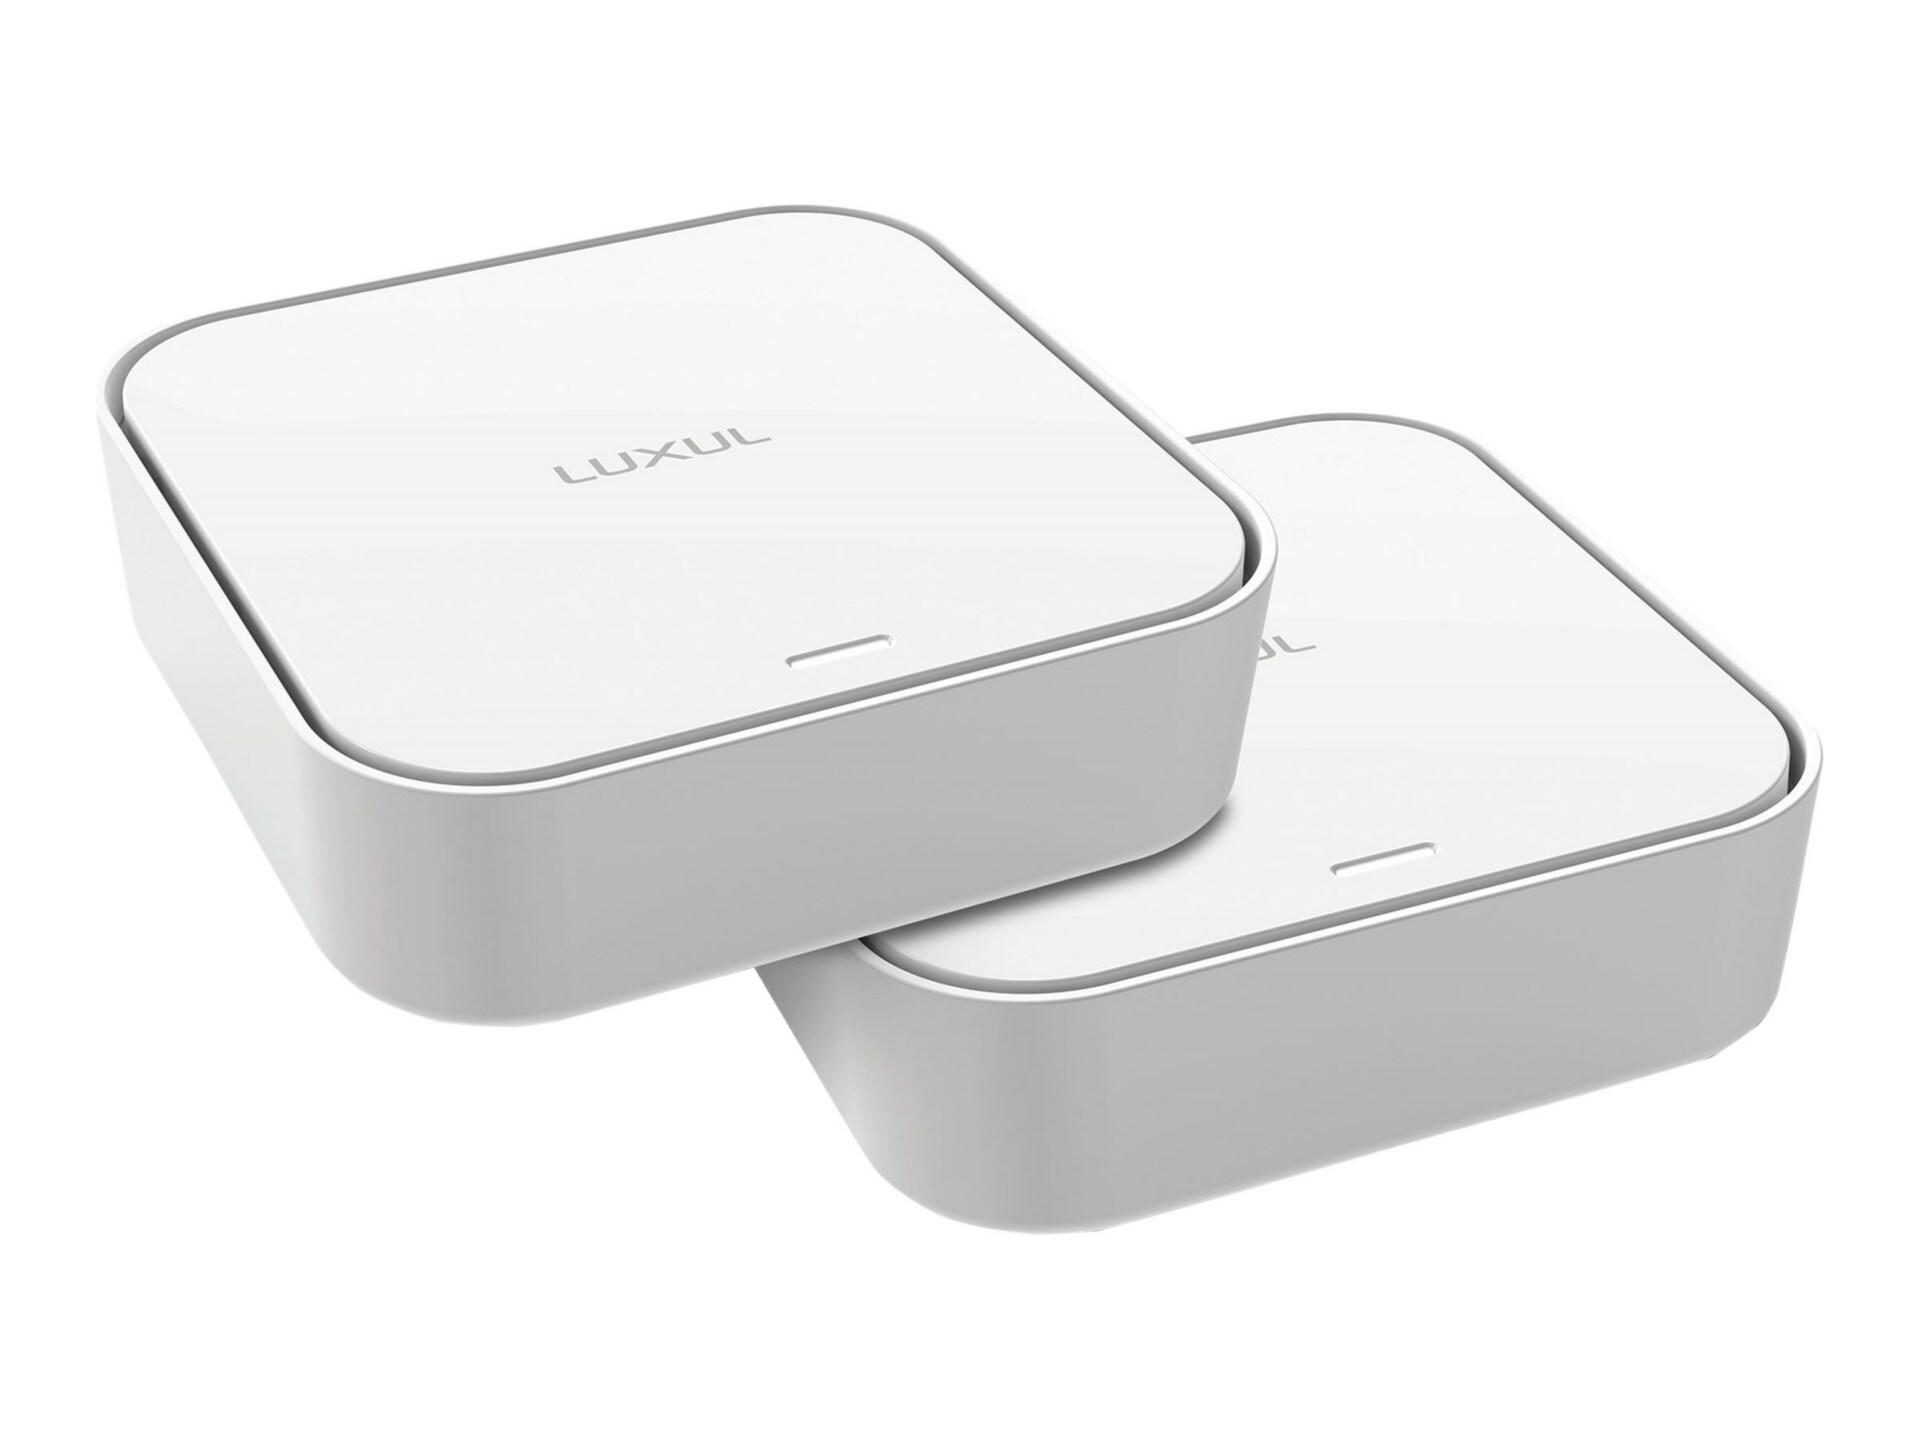 Luxul Epic Mesh - Kit - Wi-Fi system - Wi-Fi 5 - Bluetooth, Wi-Fi 5 - deskt